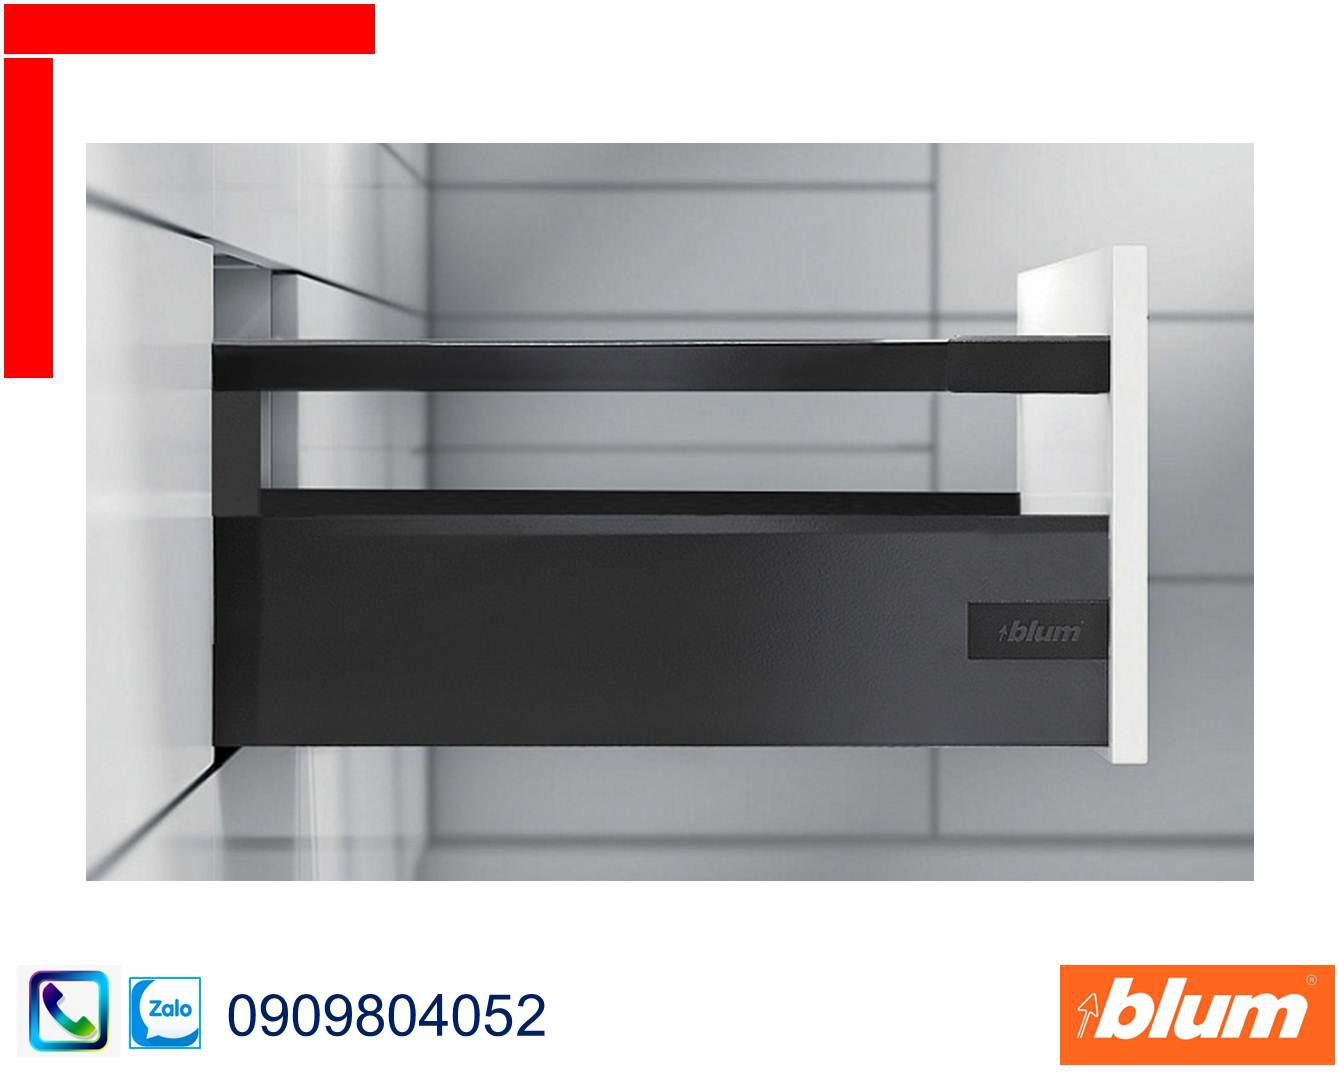 Ray hộp Blum X3 Antaro màu đen có thanh nâng cấp chiều cao 205mm